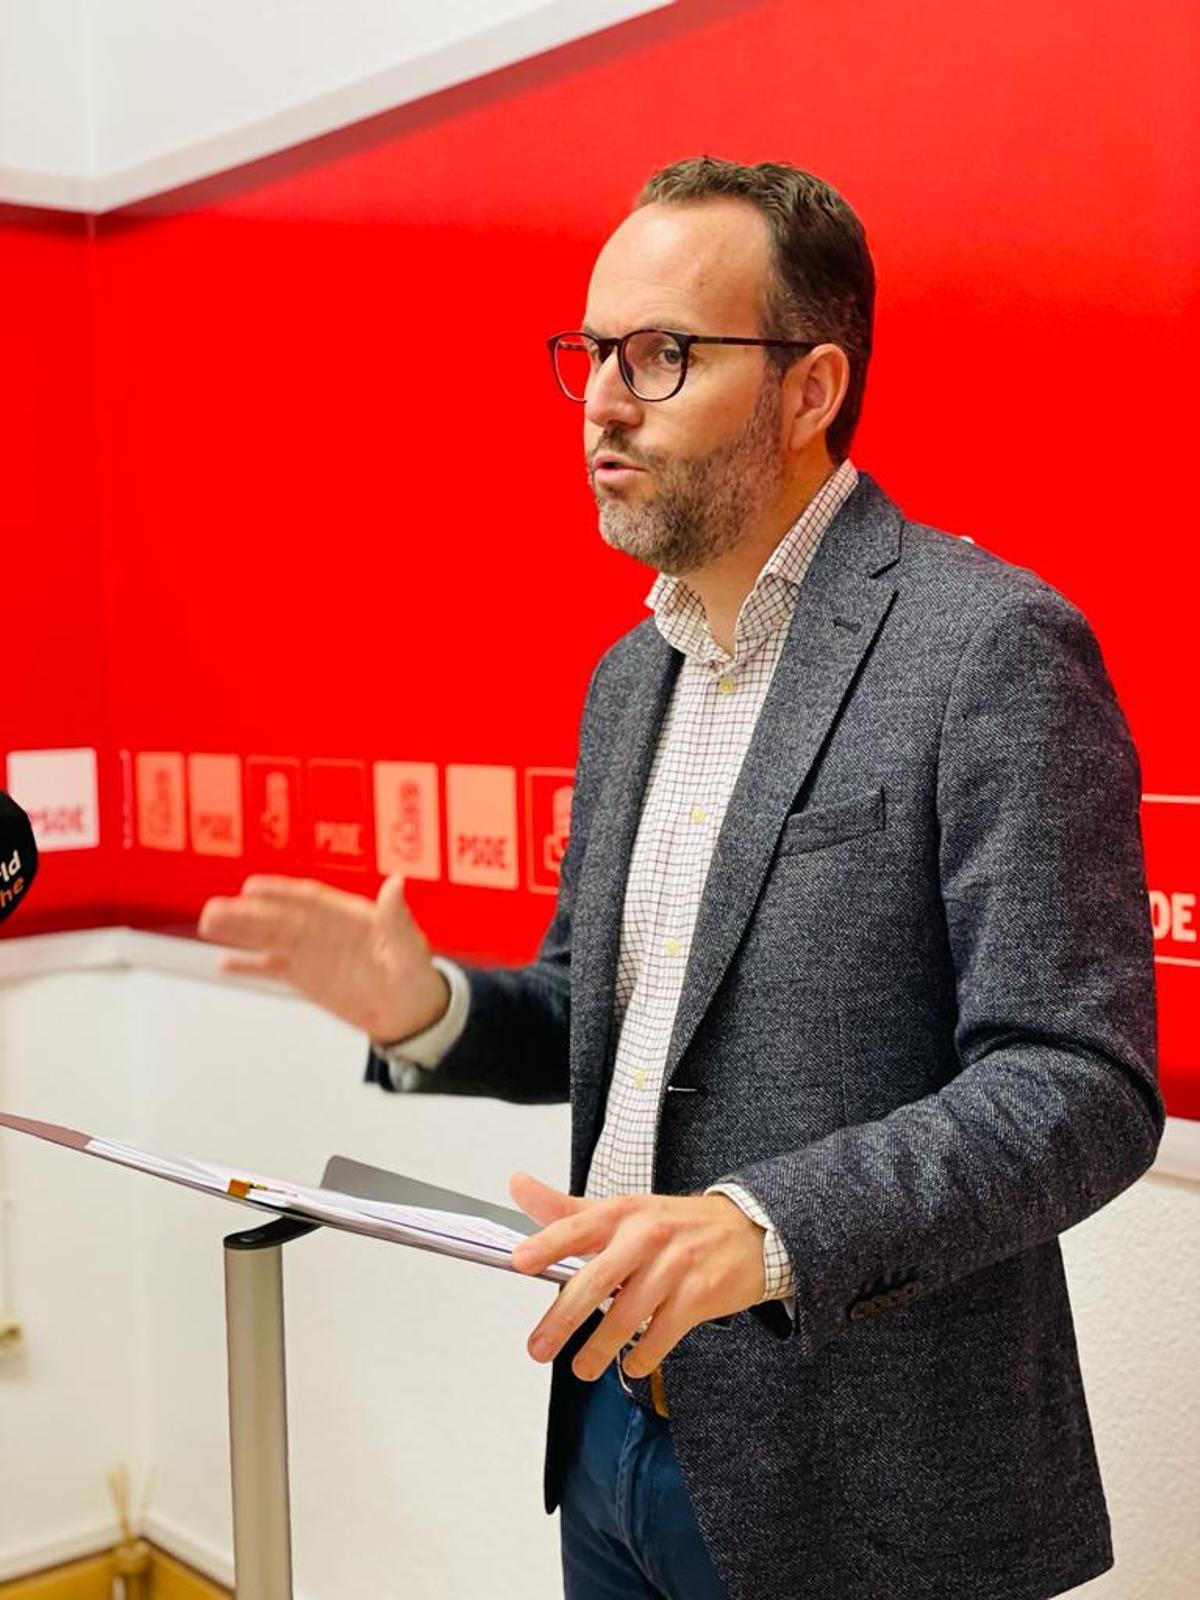 El portavoz del PSOE, Héctor Díez